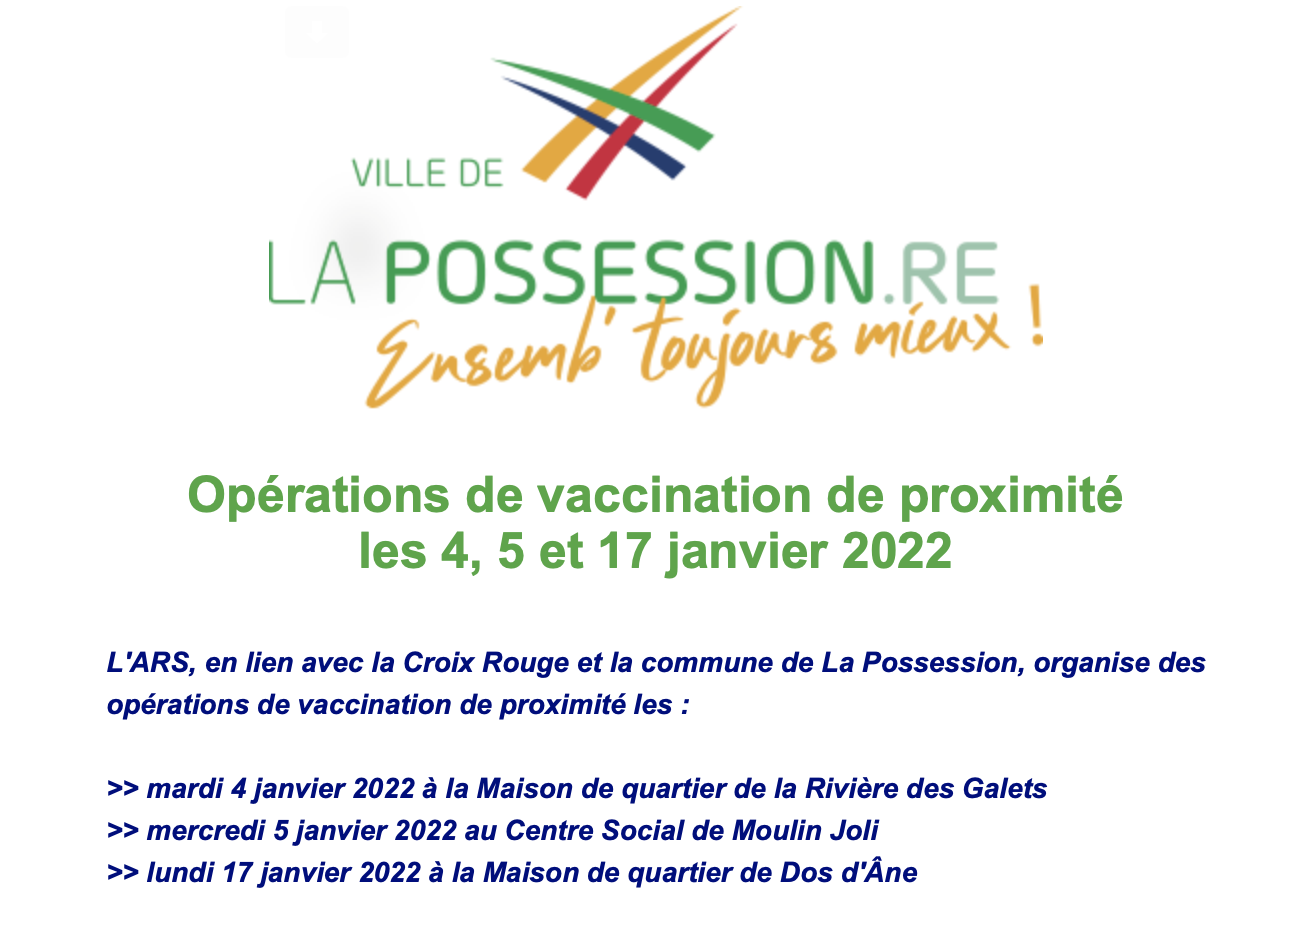 Covid : Les dates et lieux des opérations de vaccination de proximité à La Possession